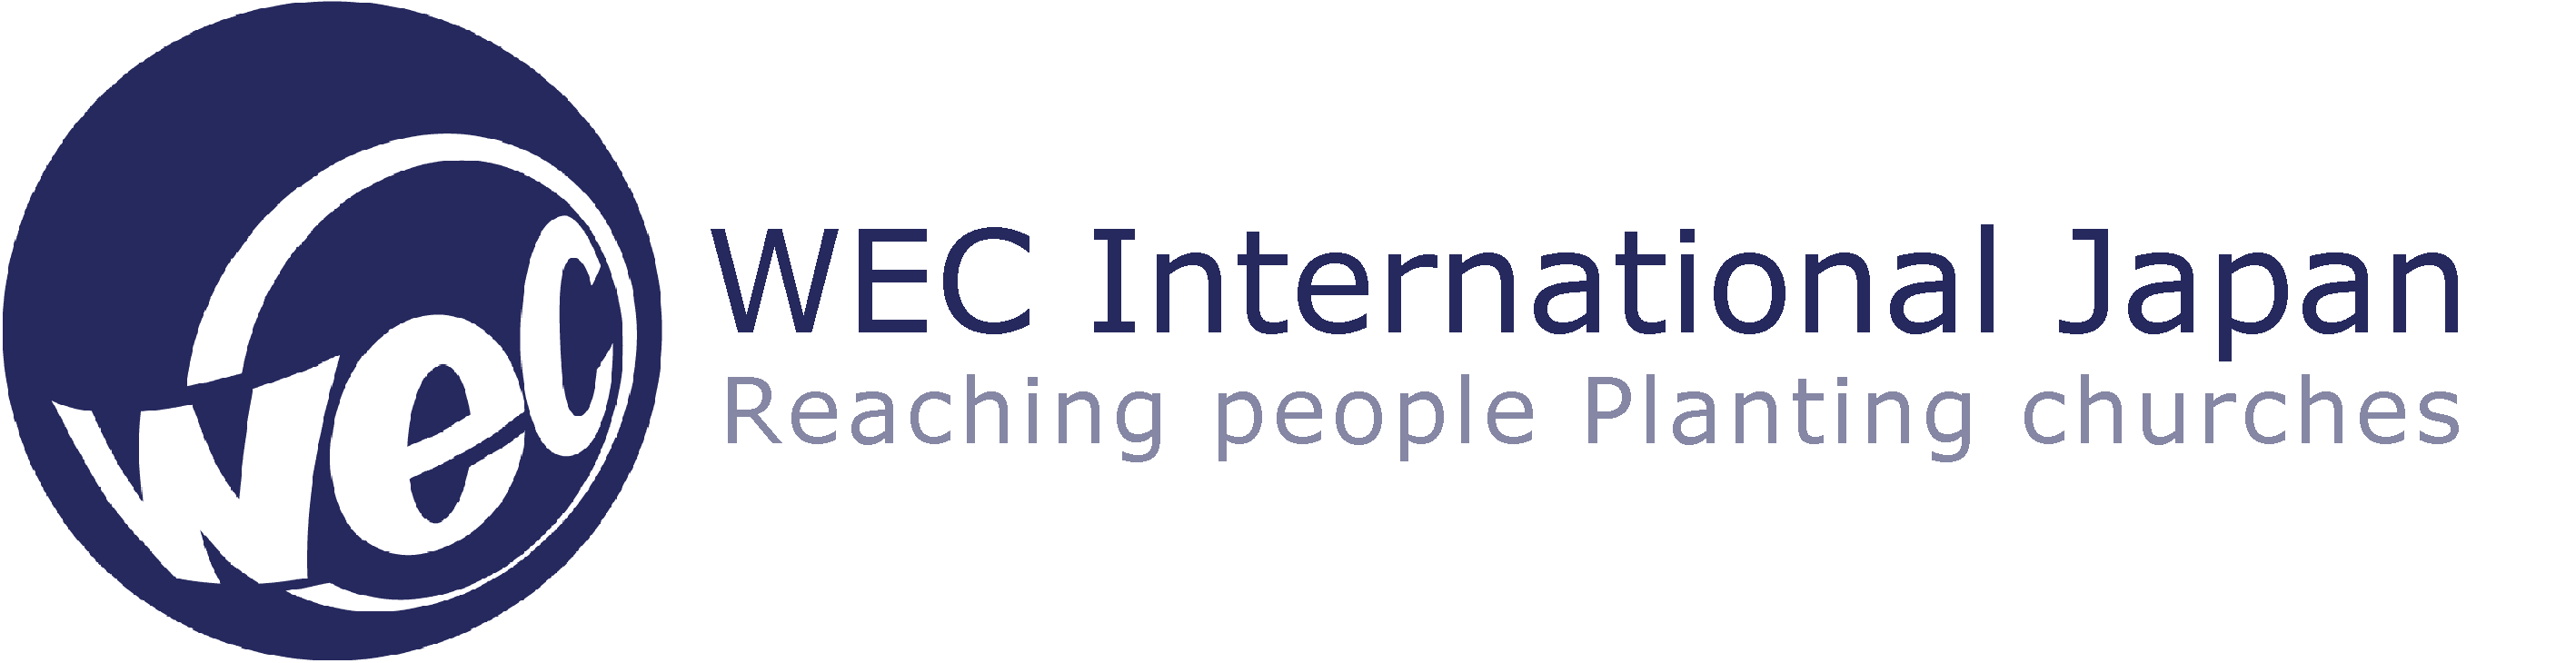 WEC Logo - WEC Japan - Worldwide Evangelization for Christ